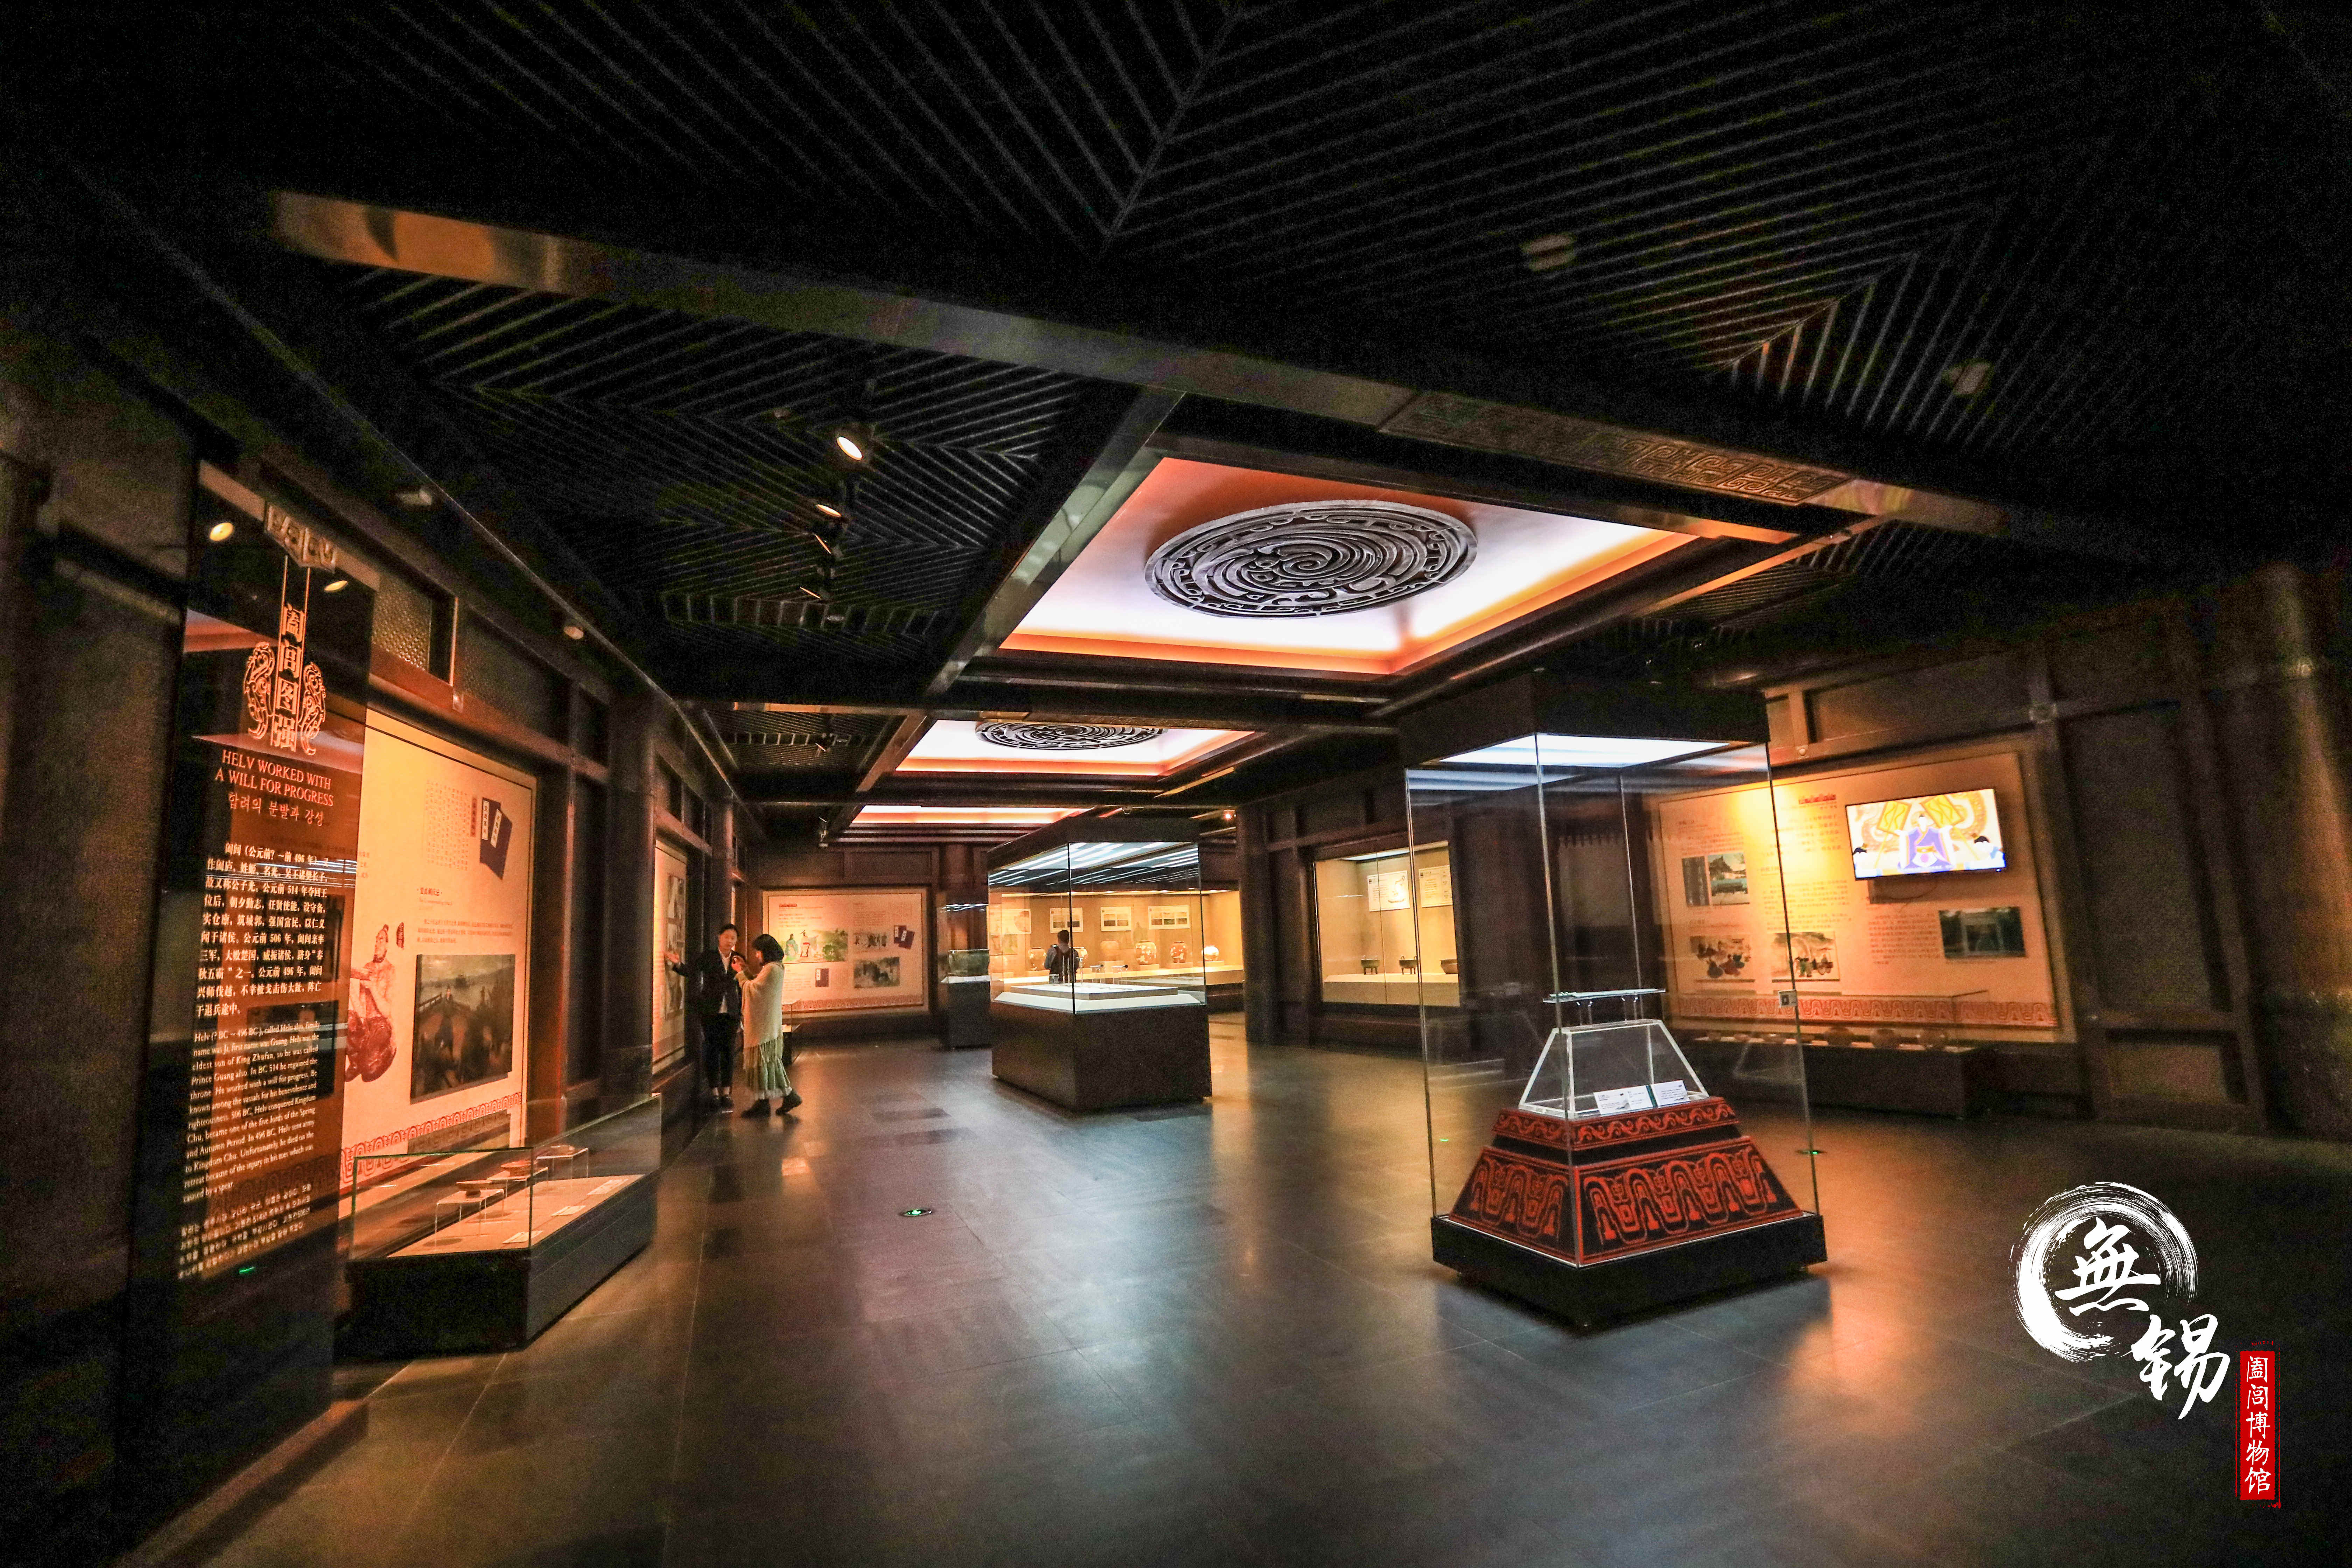 无锡阖闾城遗址博物馆图片